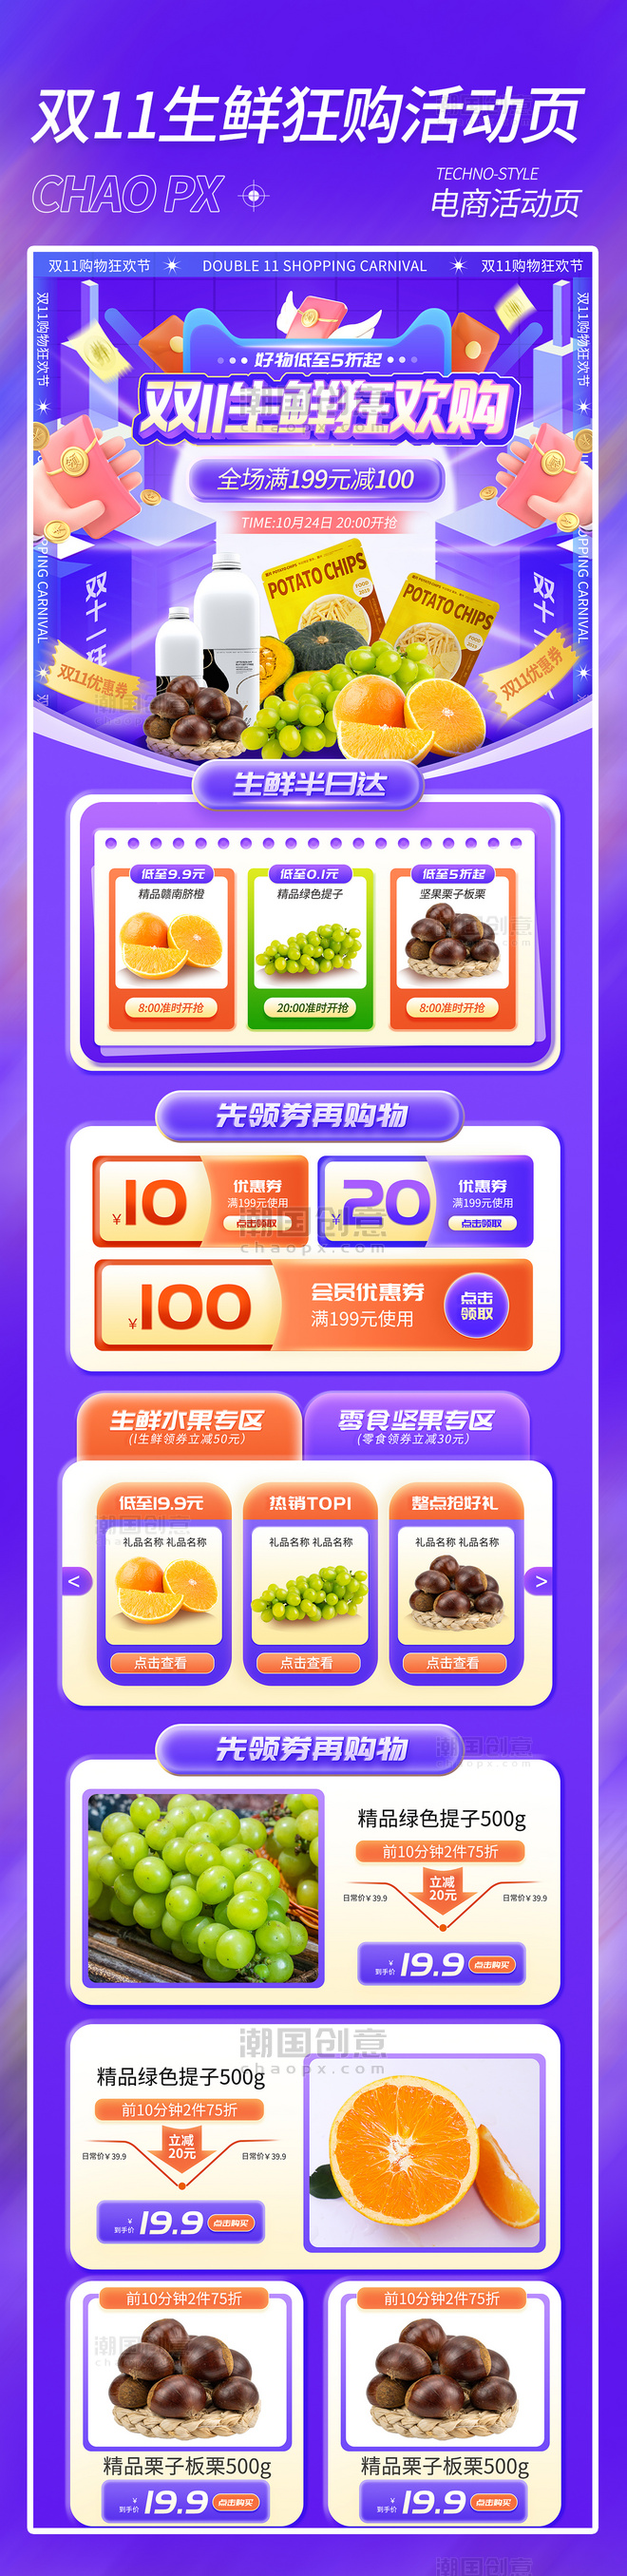 紫色双十一双11生鲜果蔬狂欢购电商活动页电商首页促销